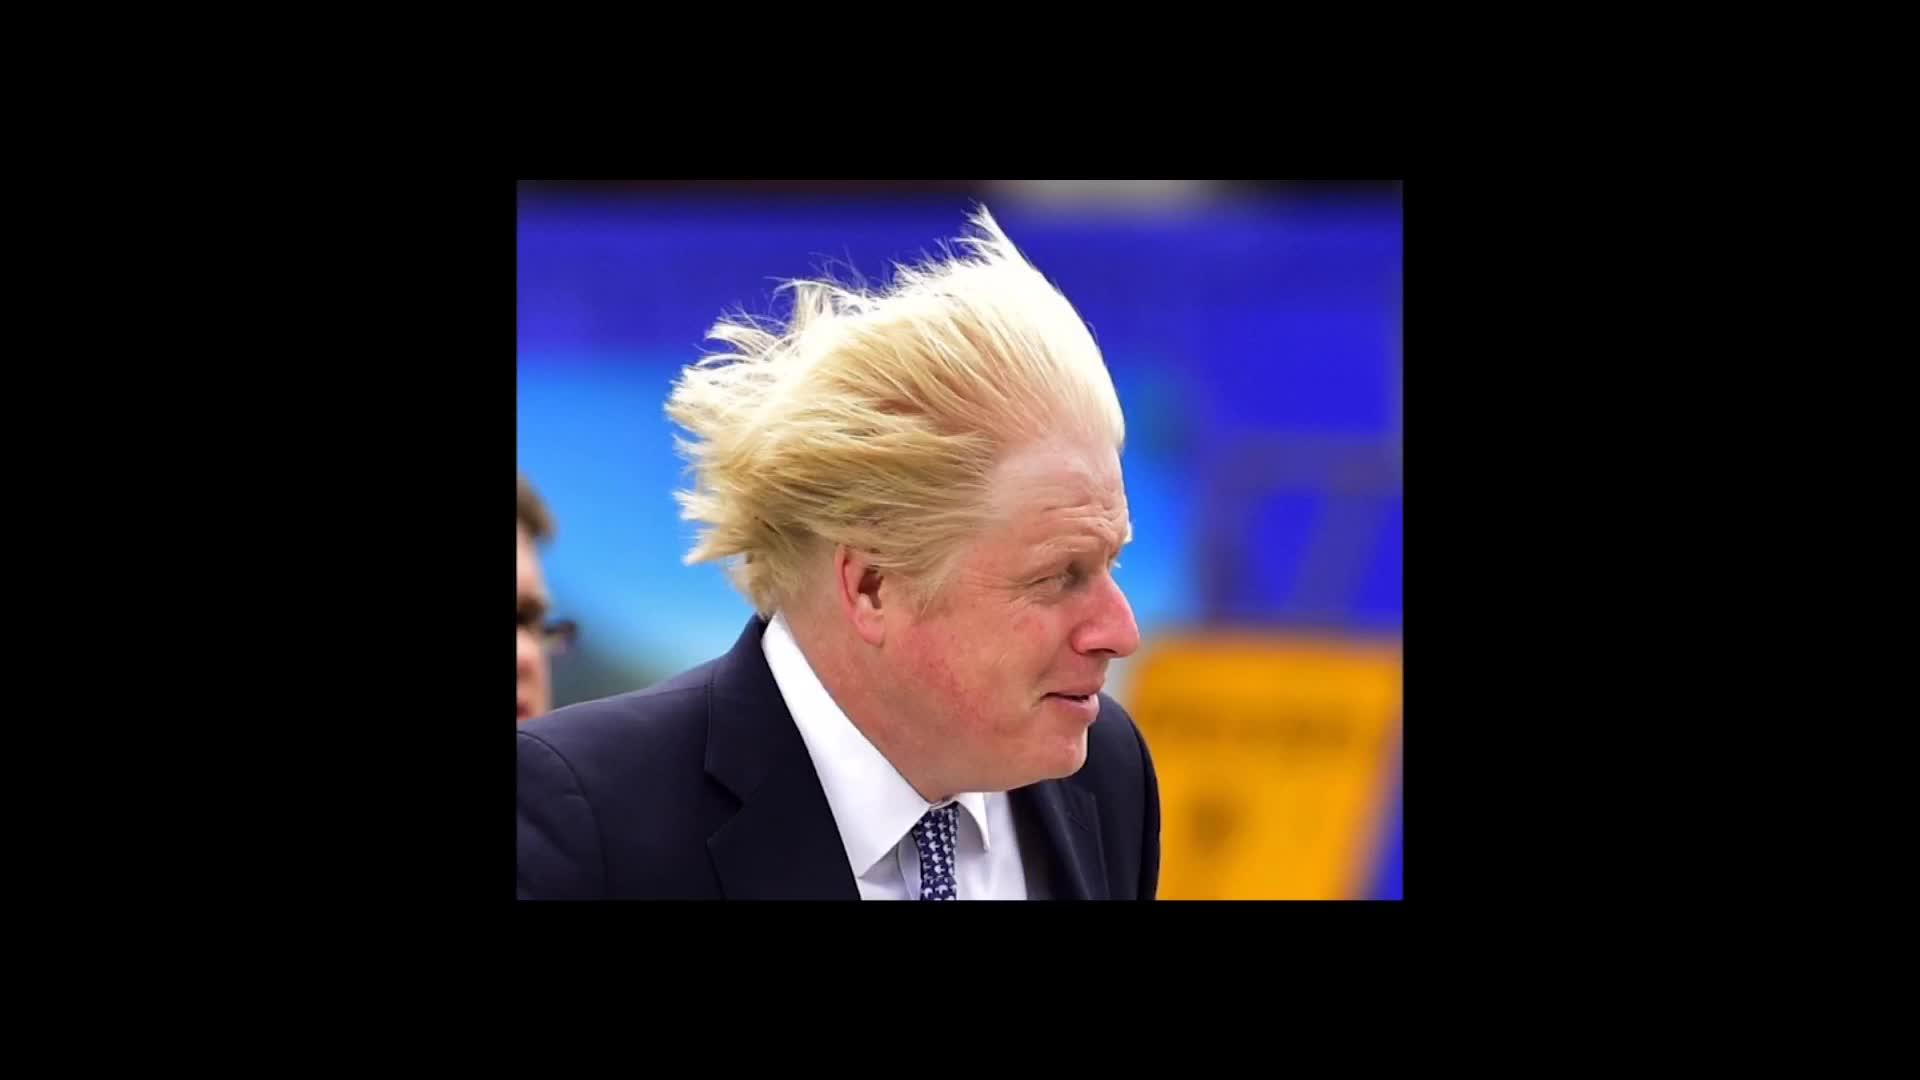 英国首相搞笑图片